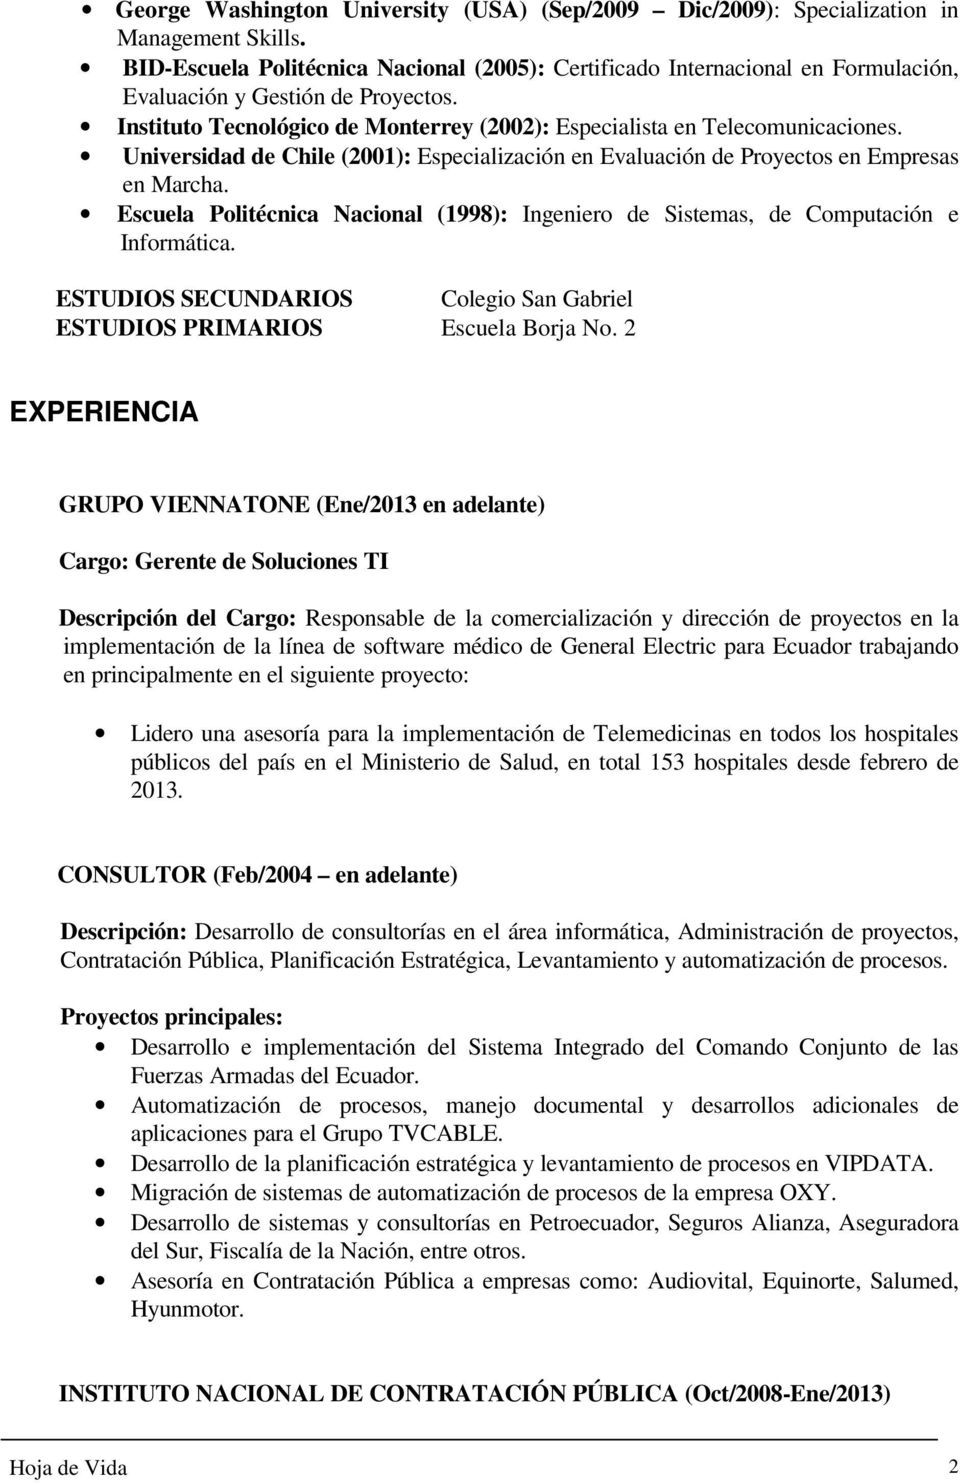 Universidad de Chile (2001): Especialización en Evaluación de Proyectos en Empresas en Marcha. Escuela Politécnica Nacional (1998): Ingeniero de Sistemas, de Computación e Informática.